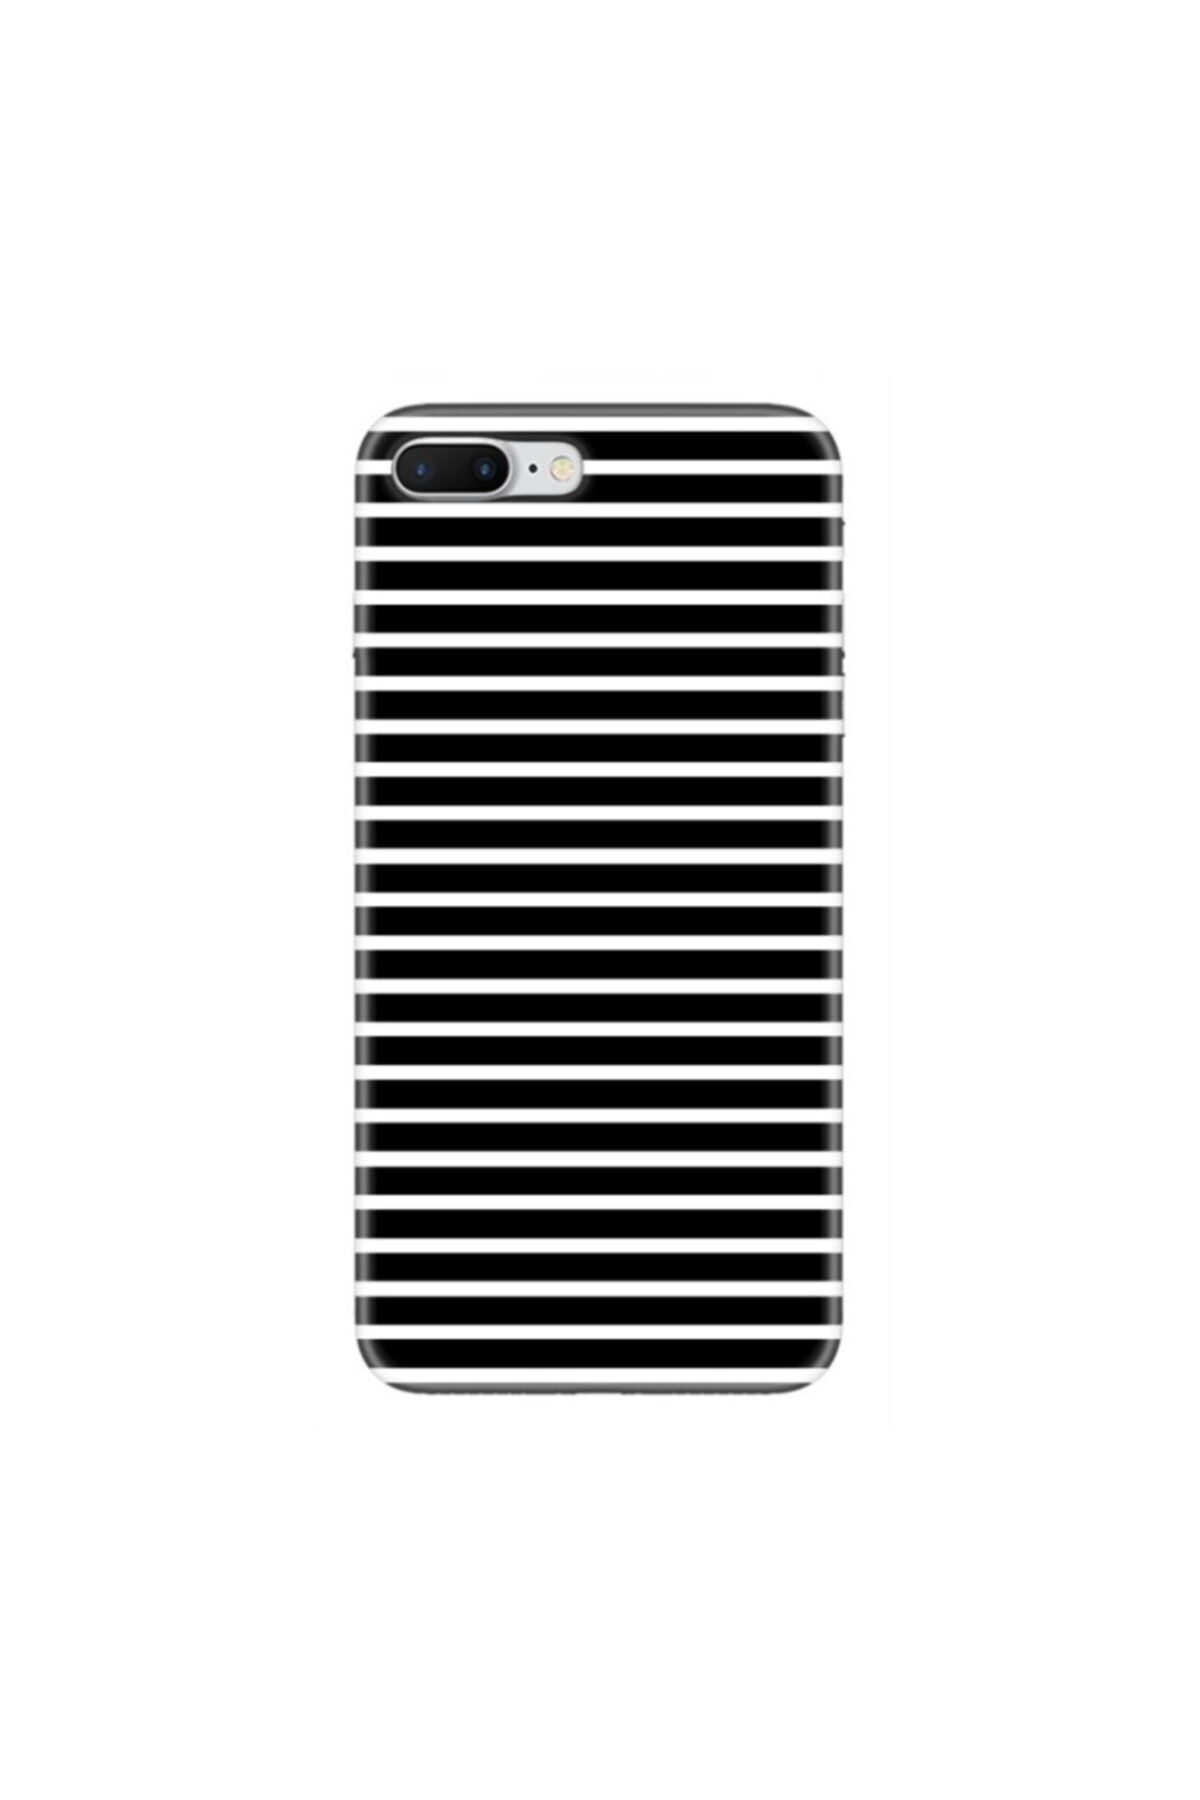 mooodcase Iphone 7 Plus Siyah Beyaz Çizgi Desenli Telefon Kılıfı